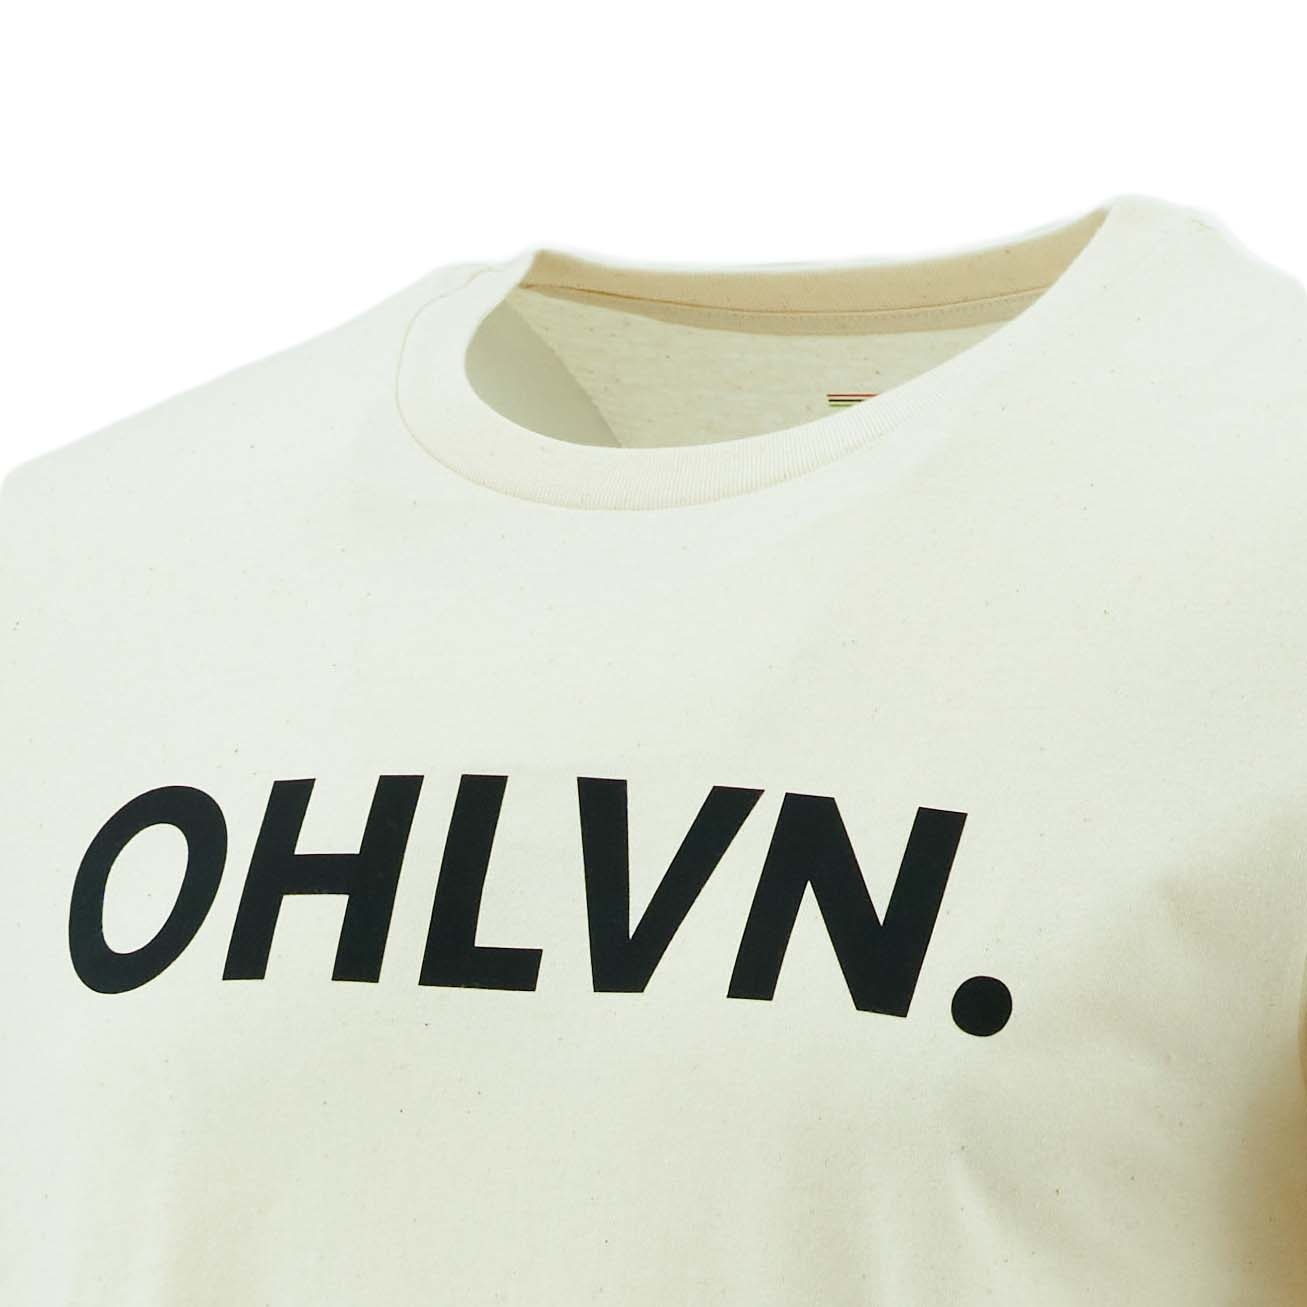 Topfanz T-shirt blanc cassé OHLVN.